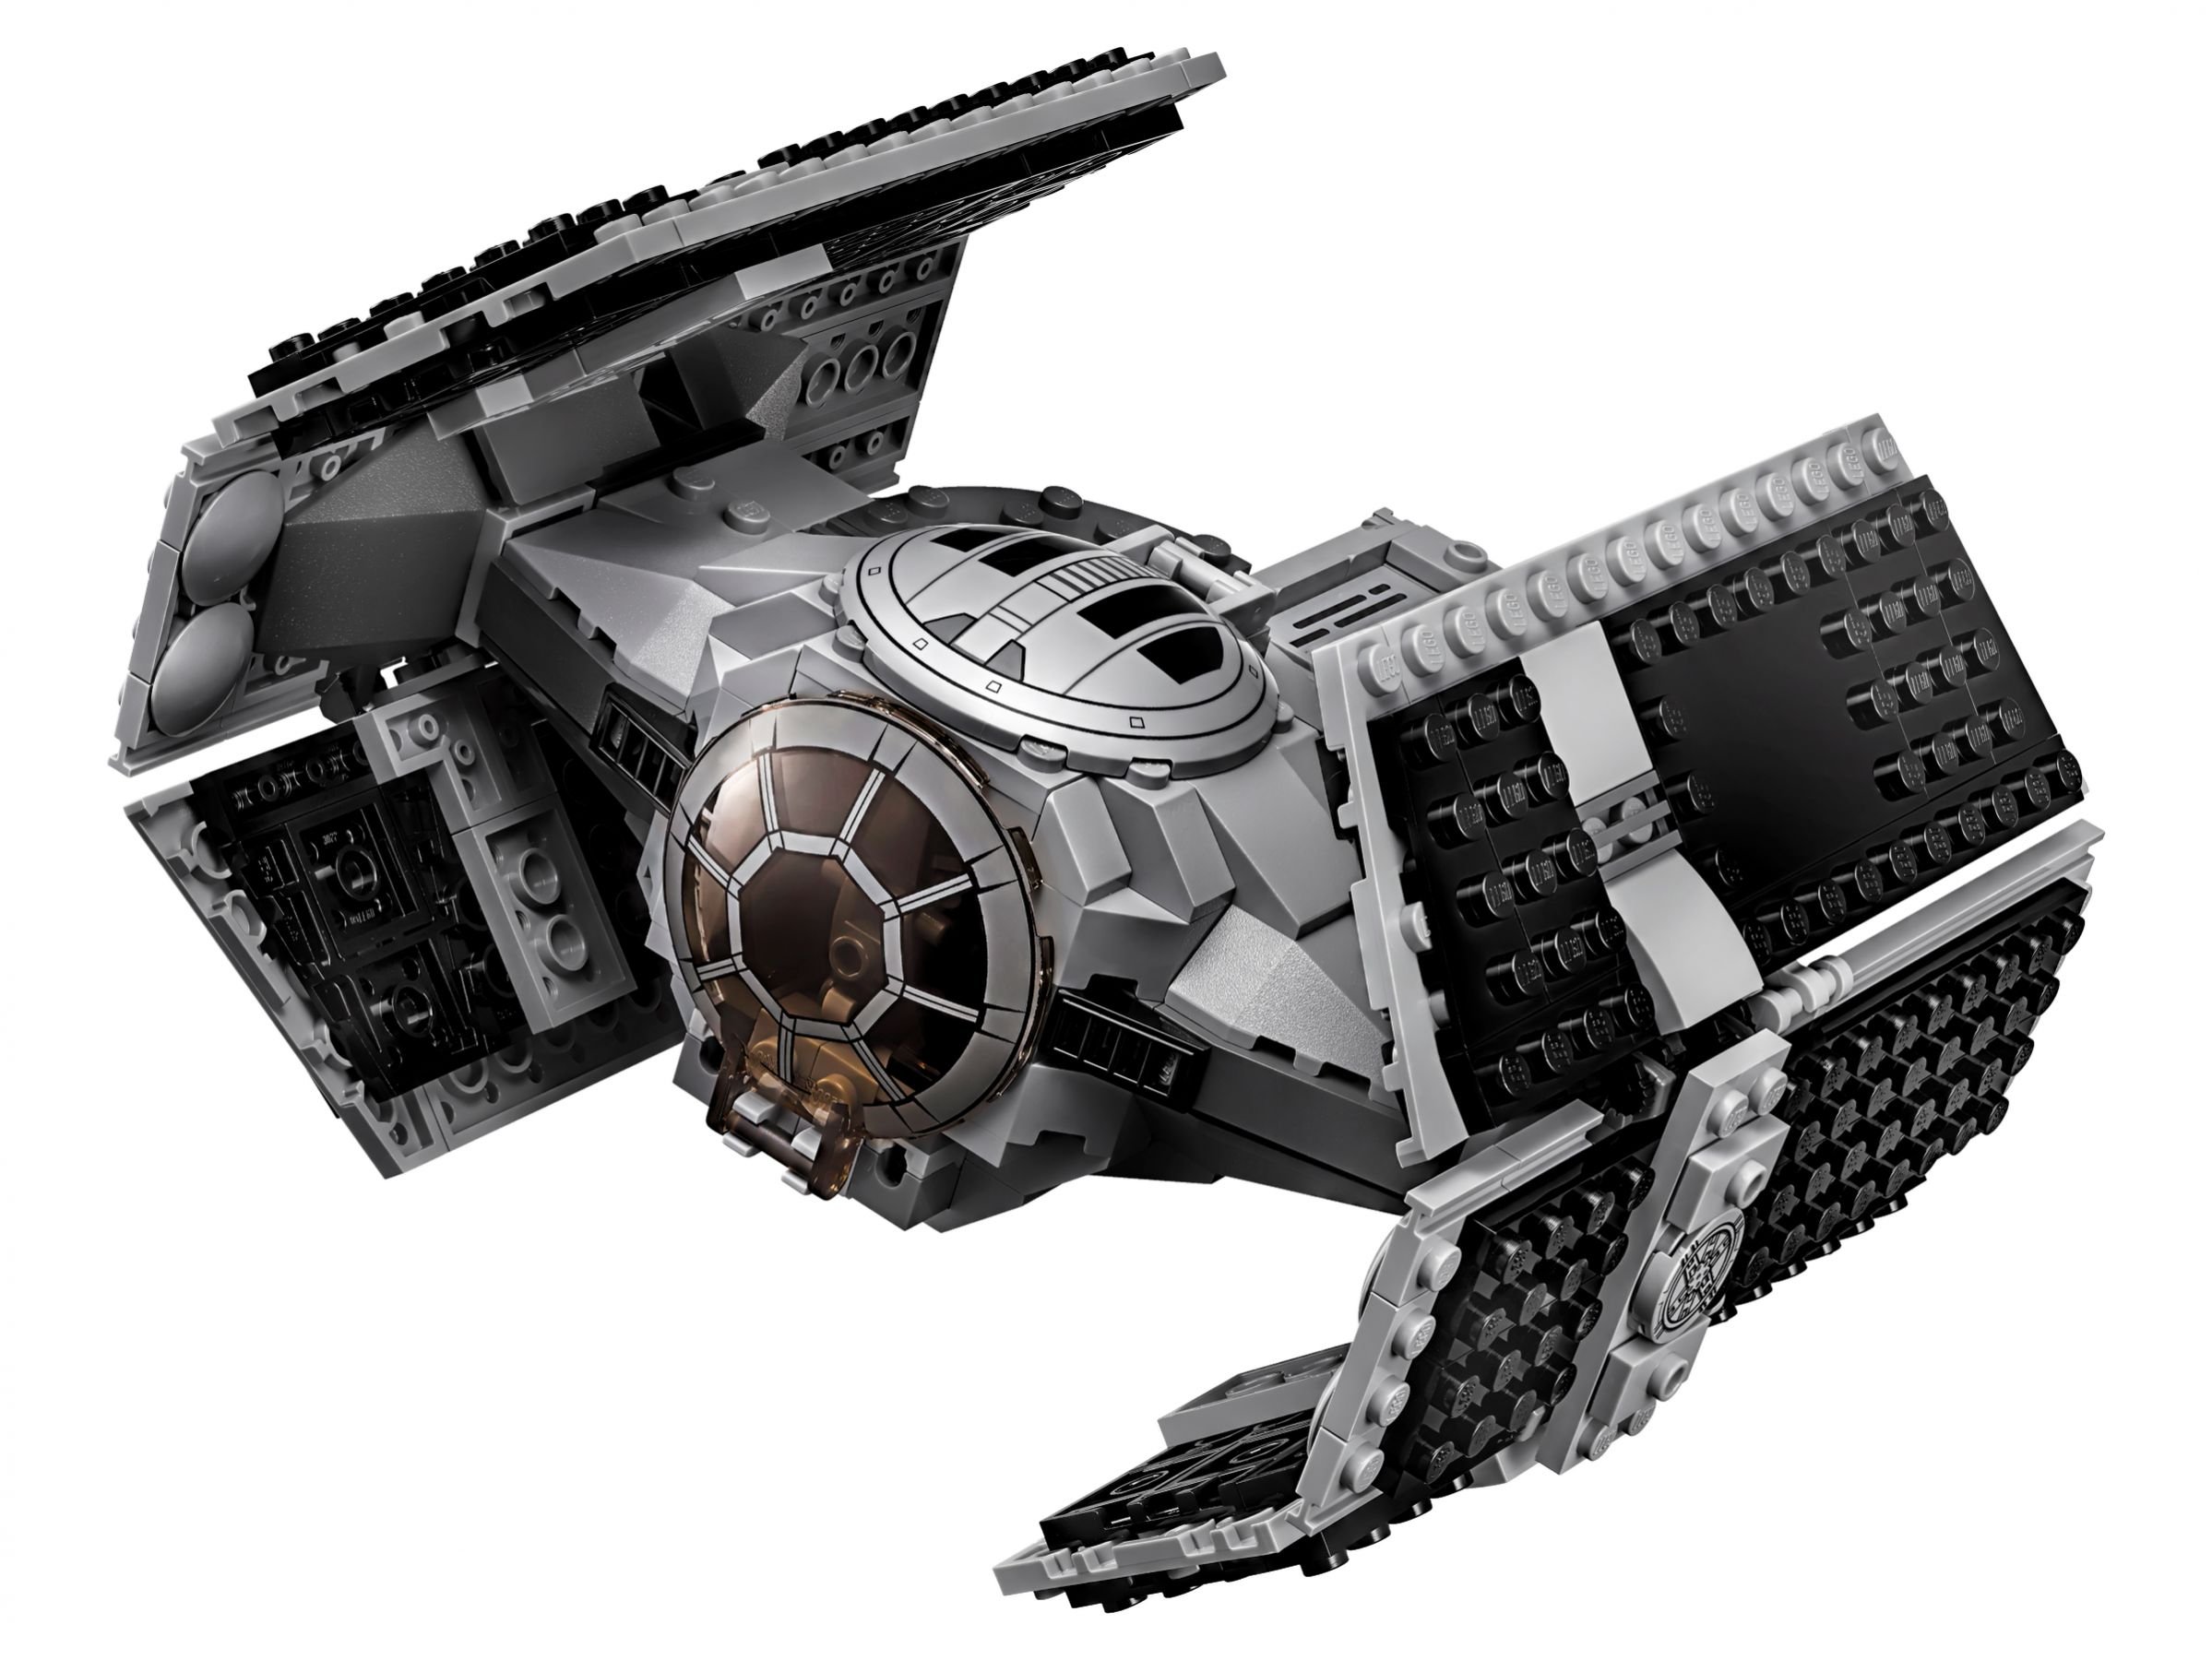 LEGO Star Wars 75150 Vader's TIE Advanced vs. A-Wing Starfighter LEGO_75150_alt2.jpg